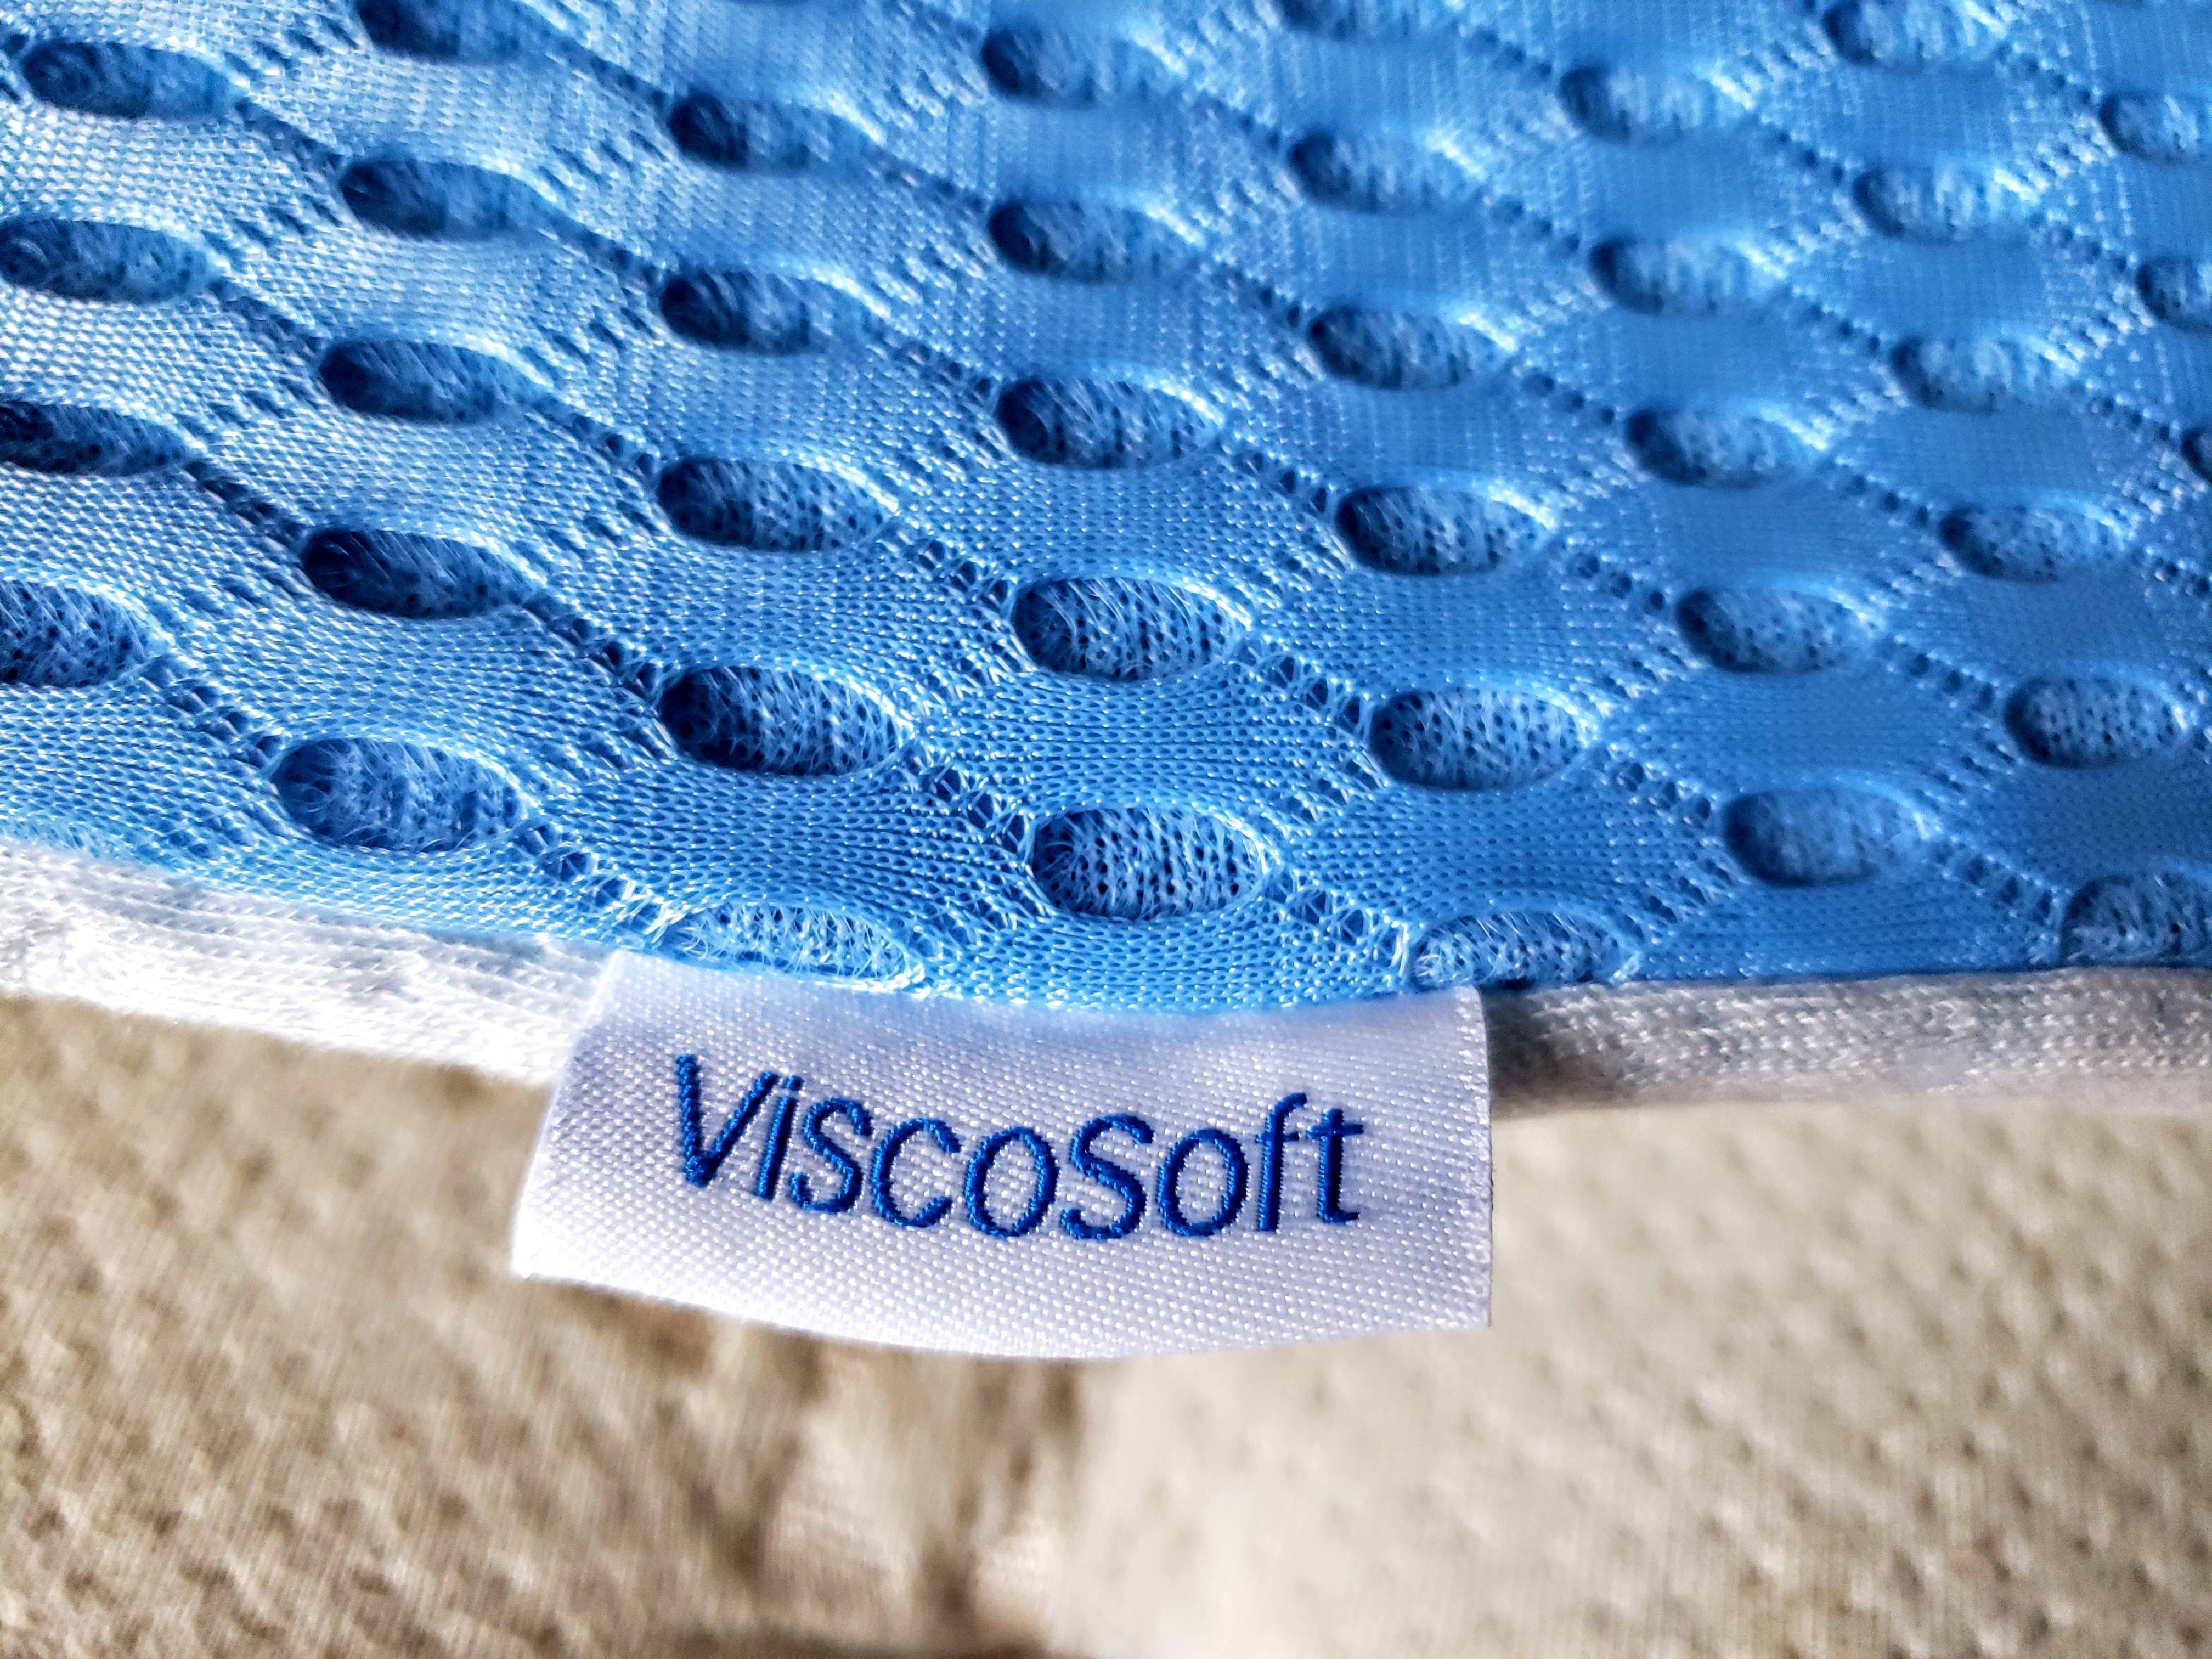 is viscosoft a good mattress topper